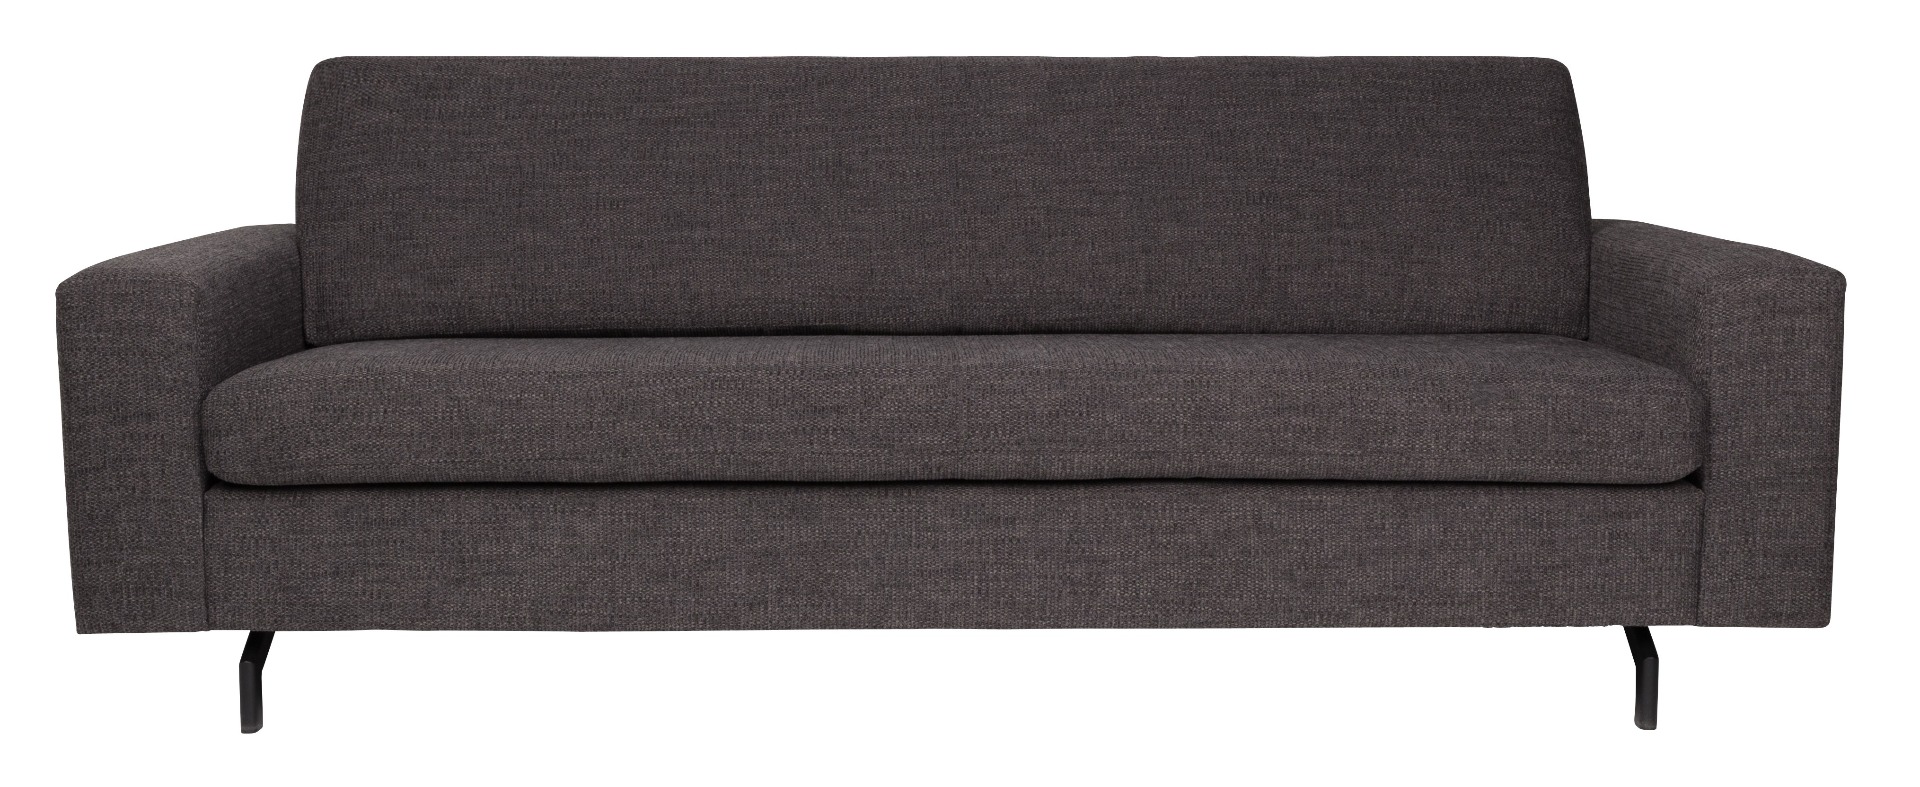 Sofa Jean 2.5 Seater in Dark Grey